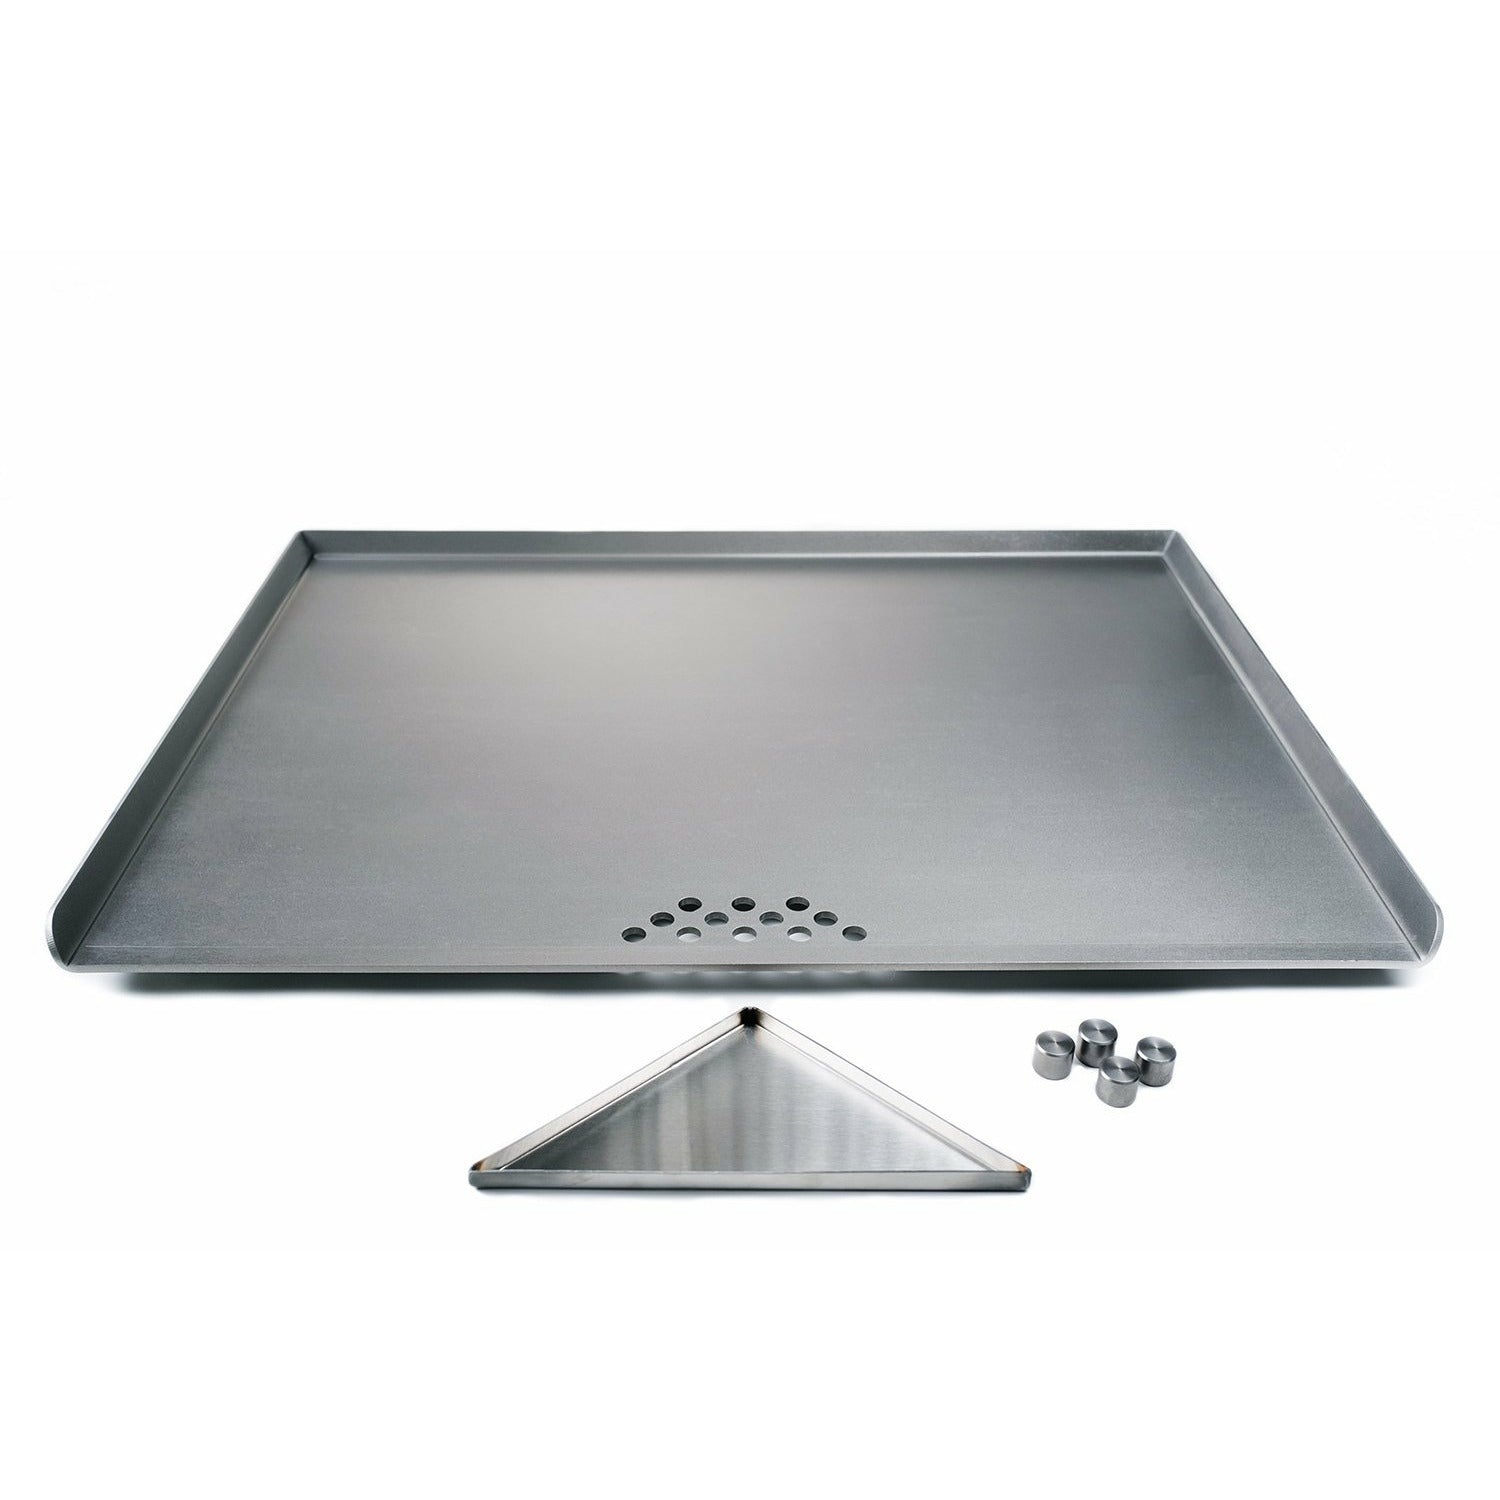 Plancha superior plana para su estufa de cocina - Steelmade